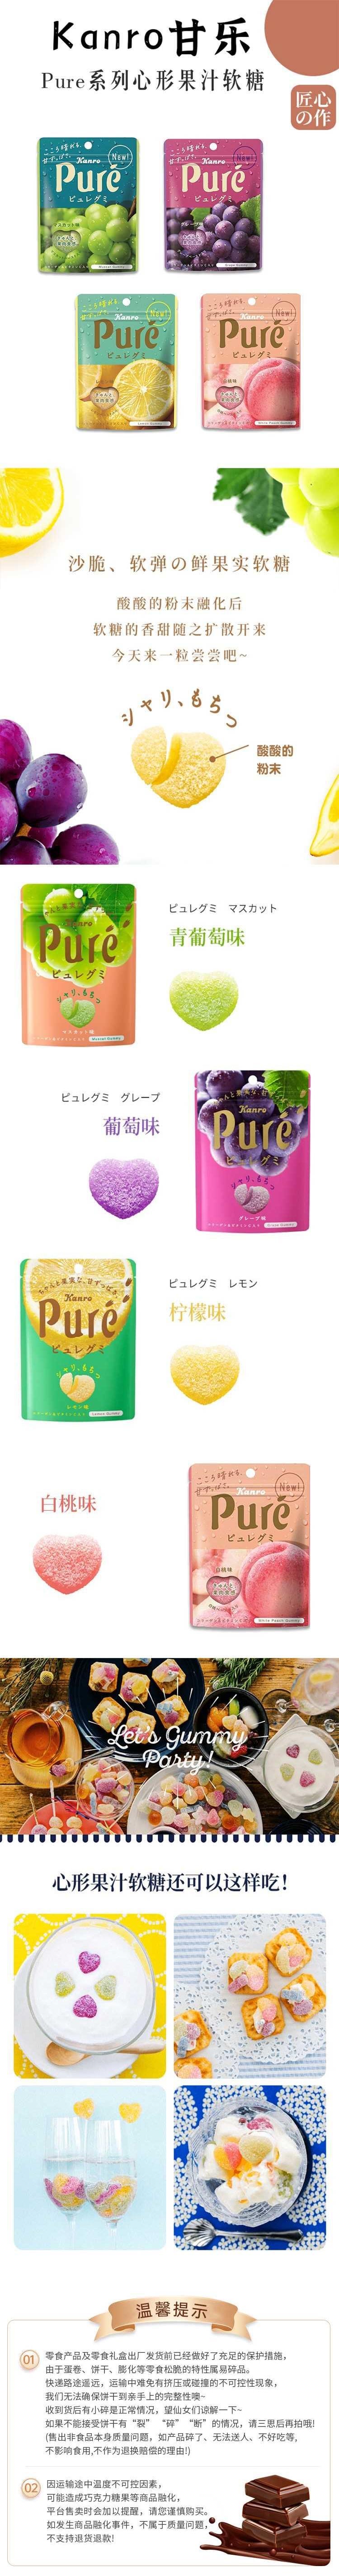 【日本直邮】KANRO甘乐 Pure果肉果汁软糖56g 橘子味